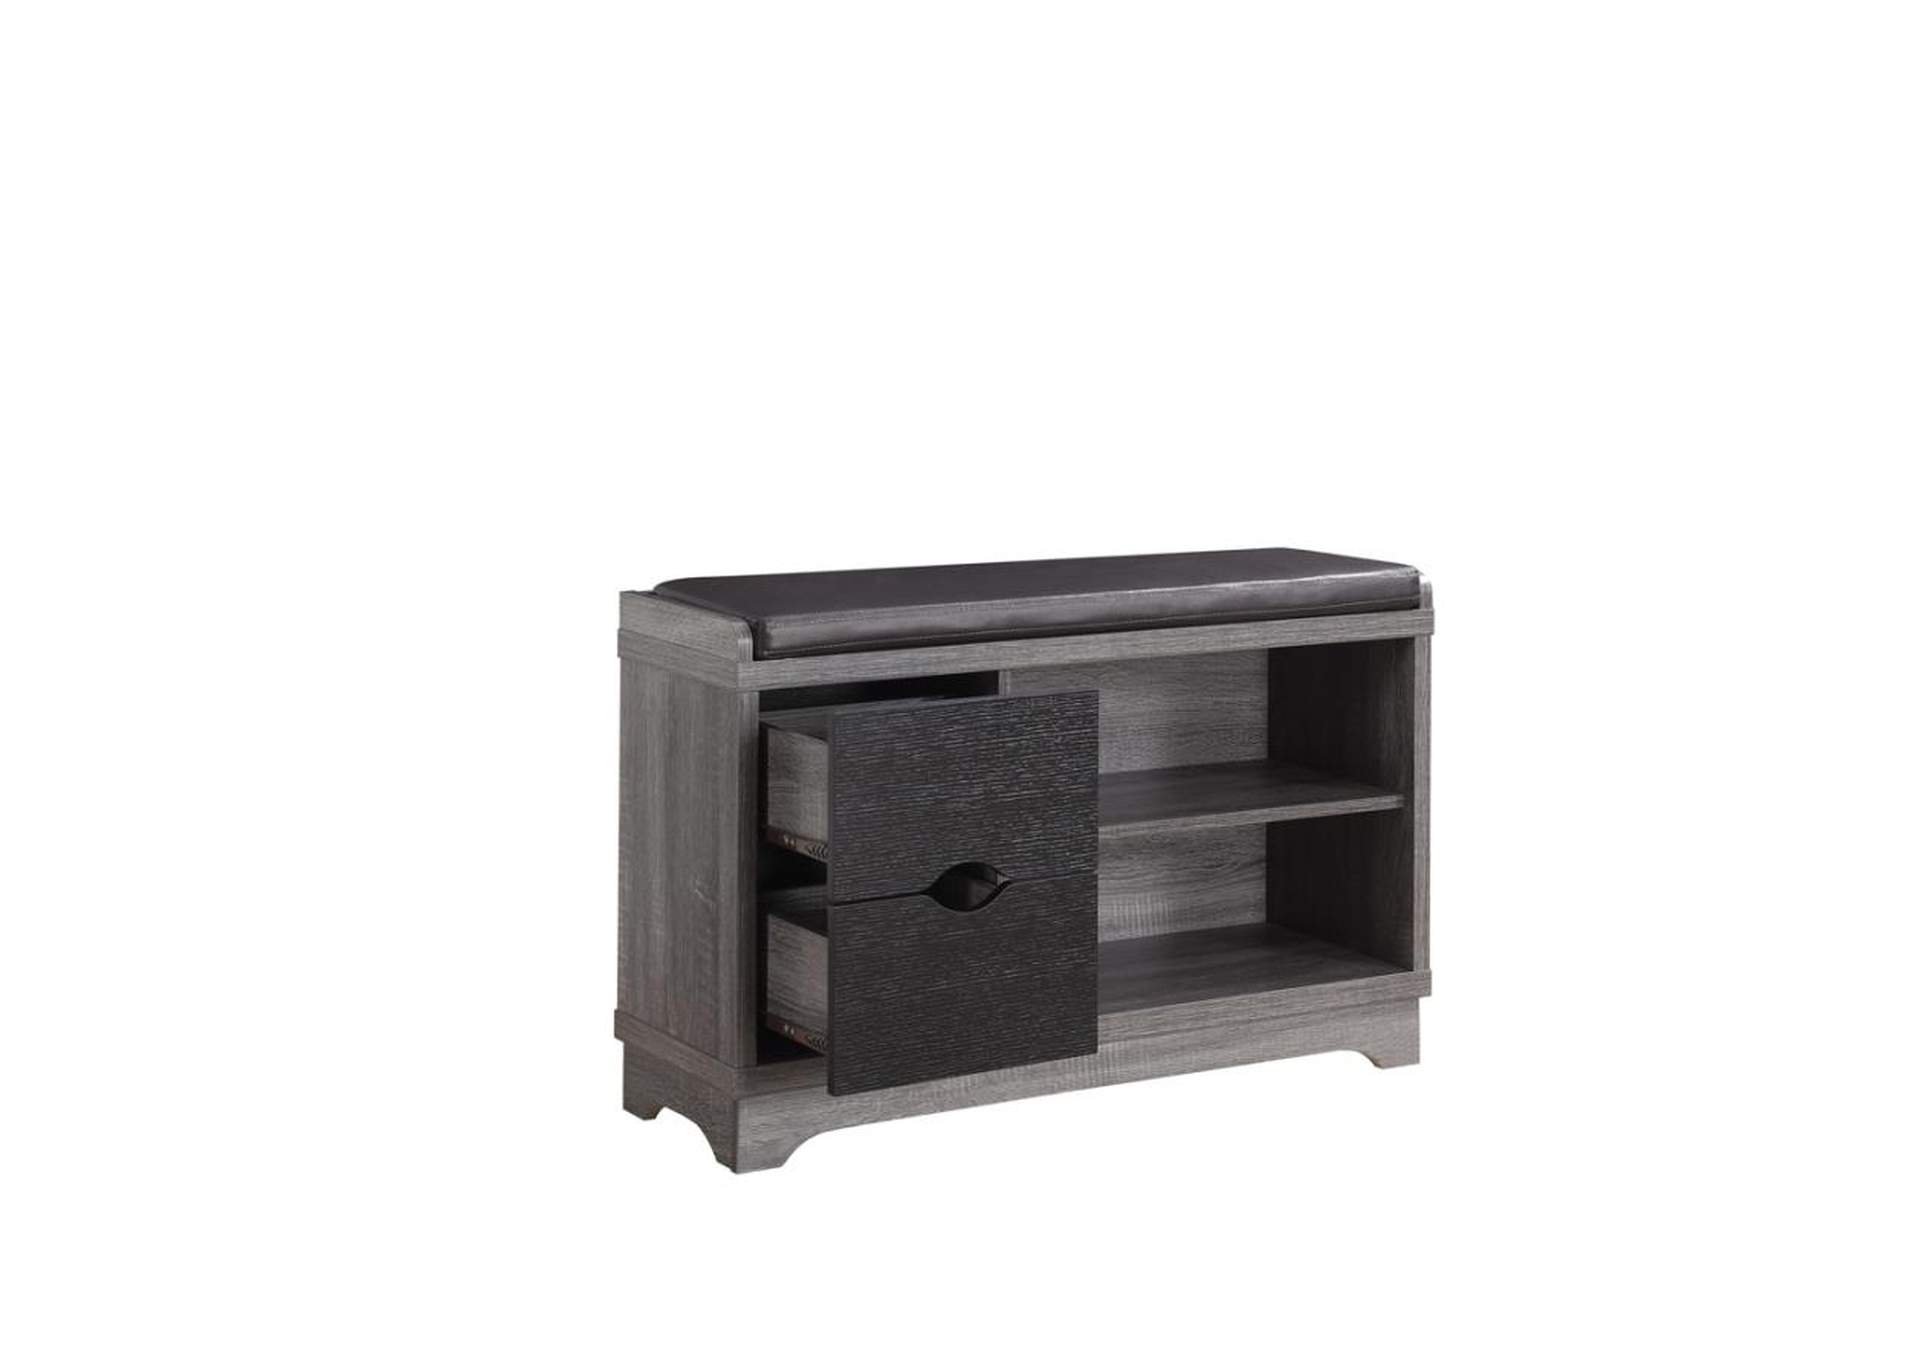 Aylin 2-Drawer Storage Bench Medium Brown And Black,Coaster Furniture